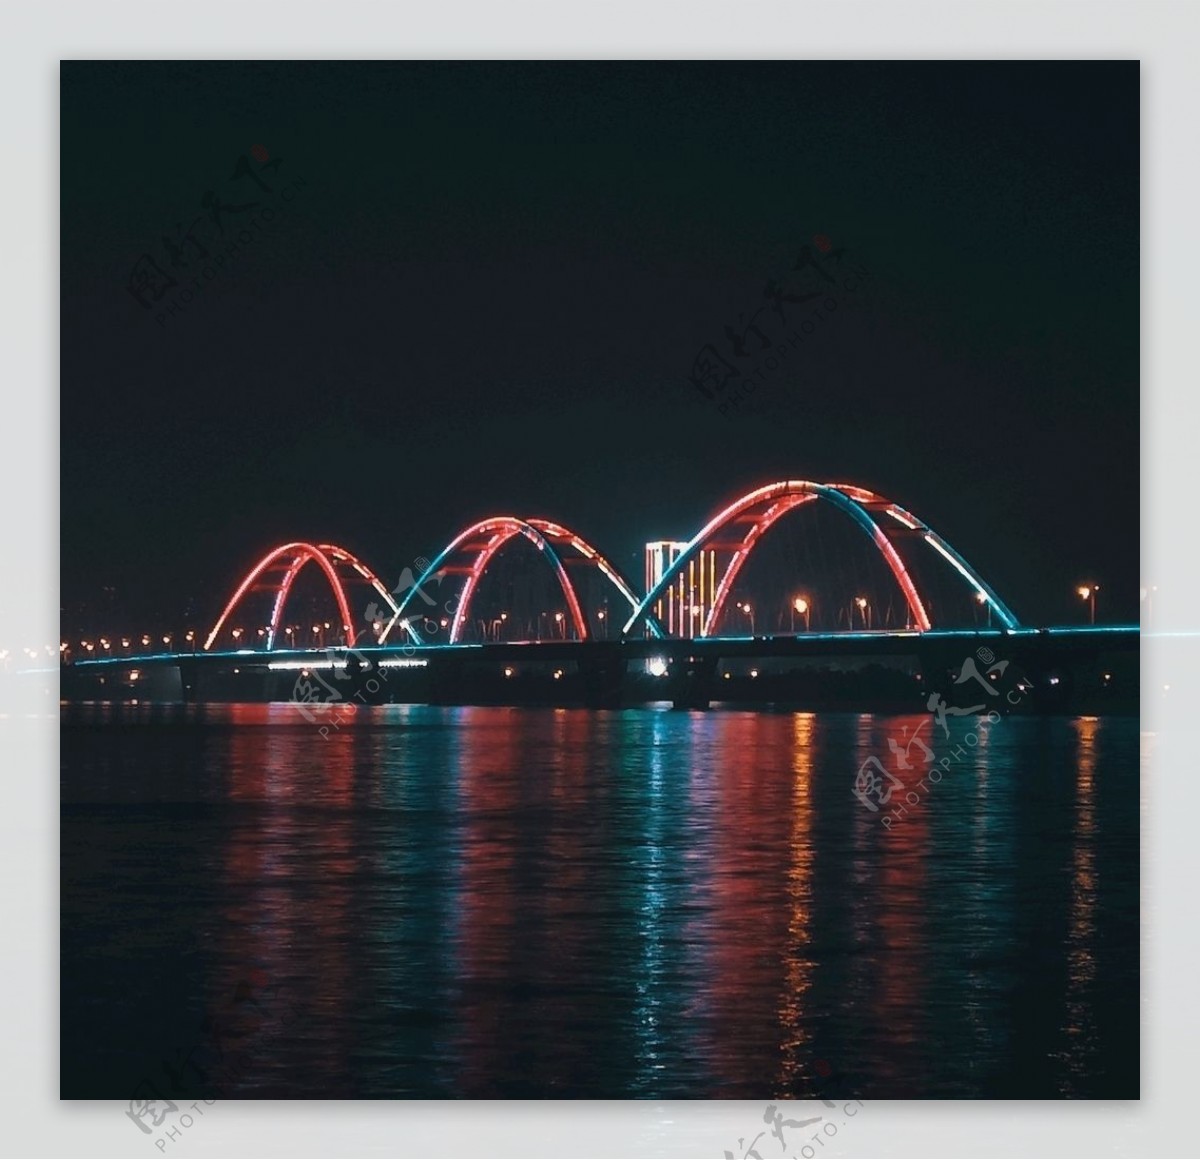 长沙市福元路大桥